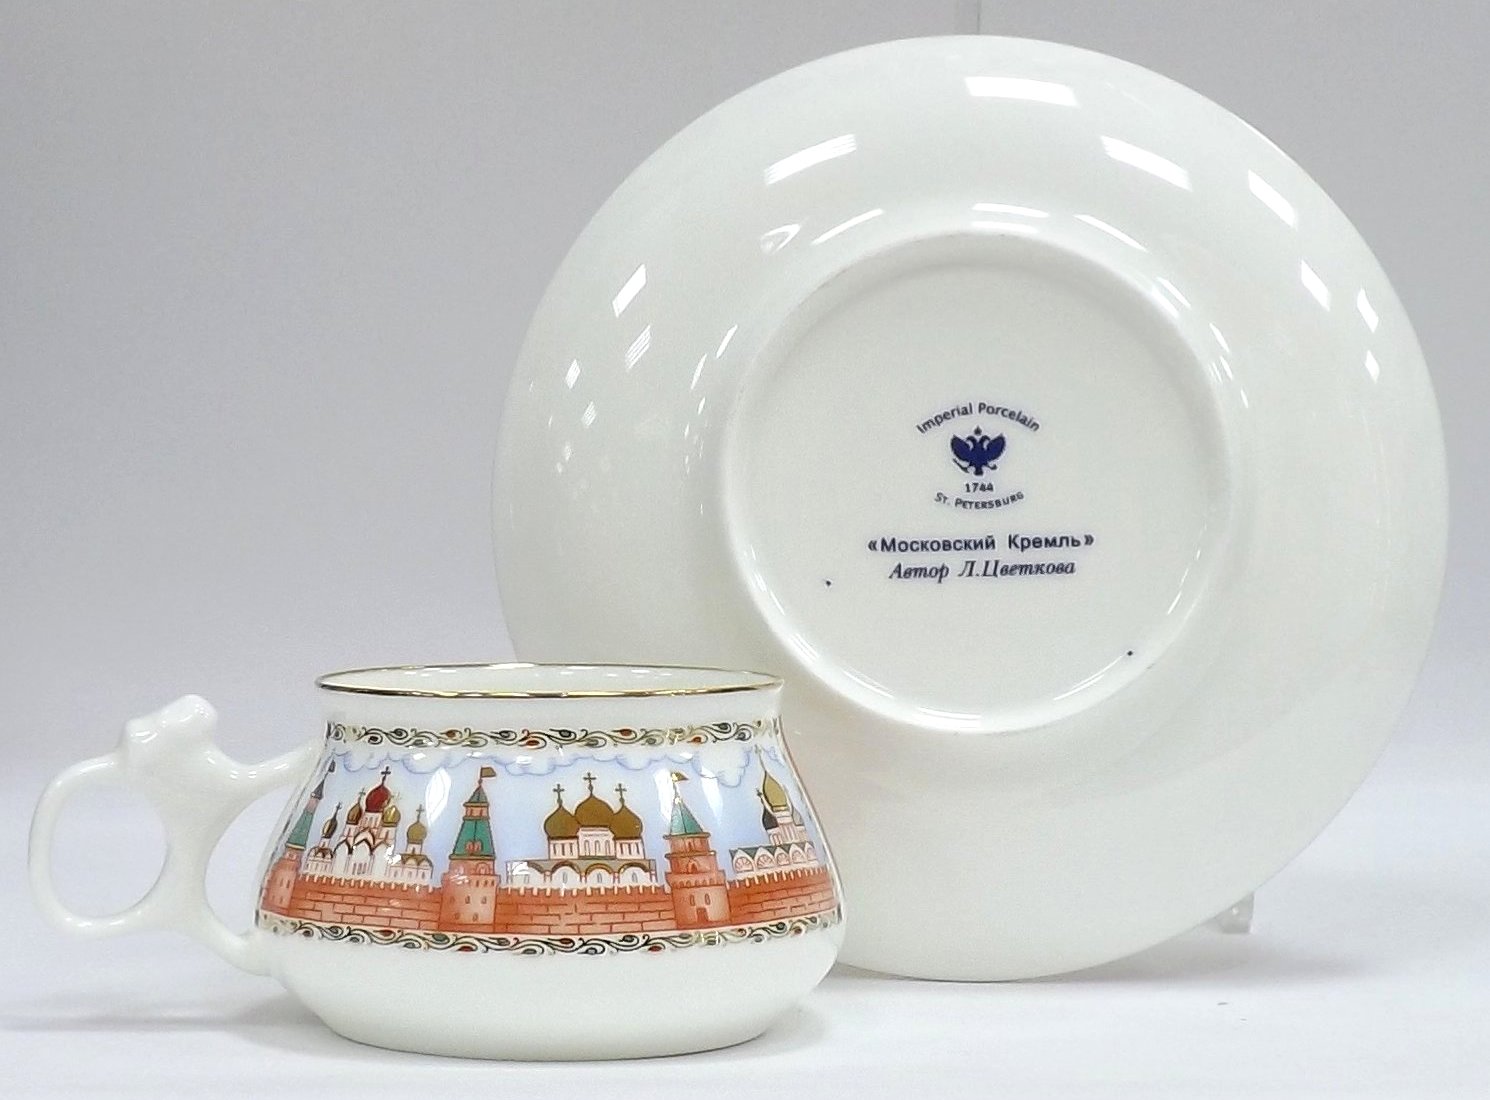 Чашка с блюдцем «Московский Кремль» — форма Билибина — от ИФЗ